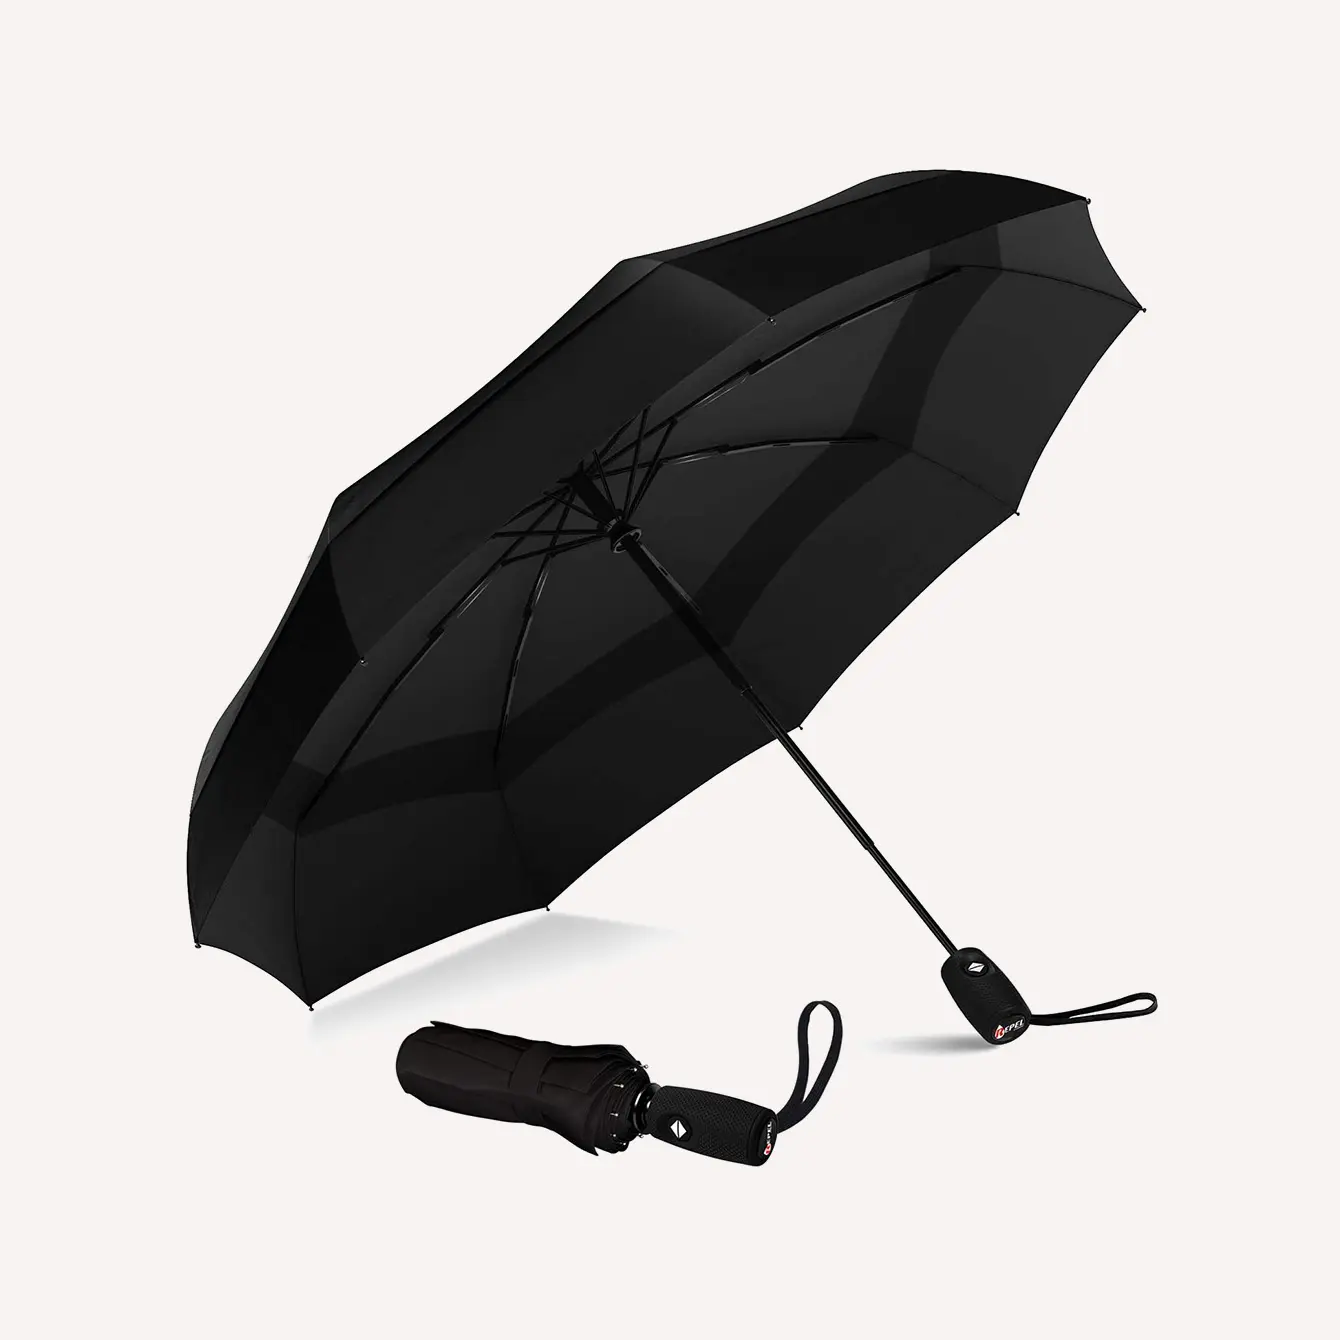 Repel Umbrella Windproof Double Vented Travel Umbrella with Teflon Coating